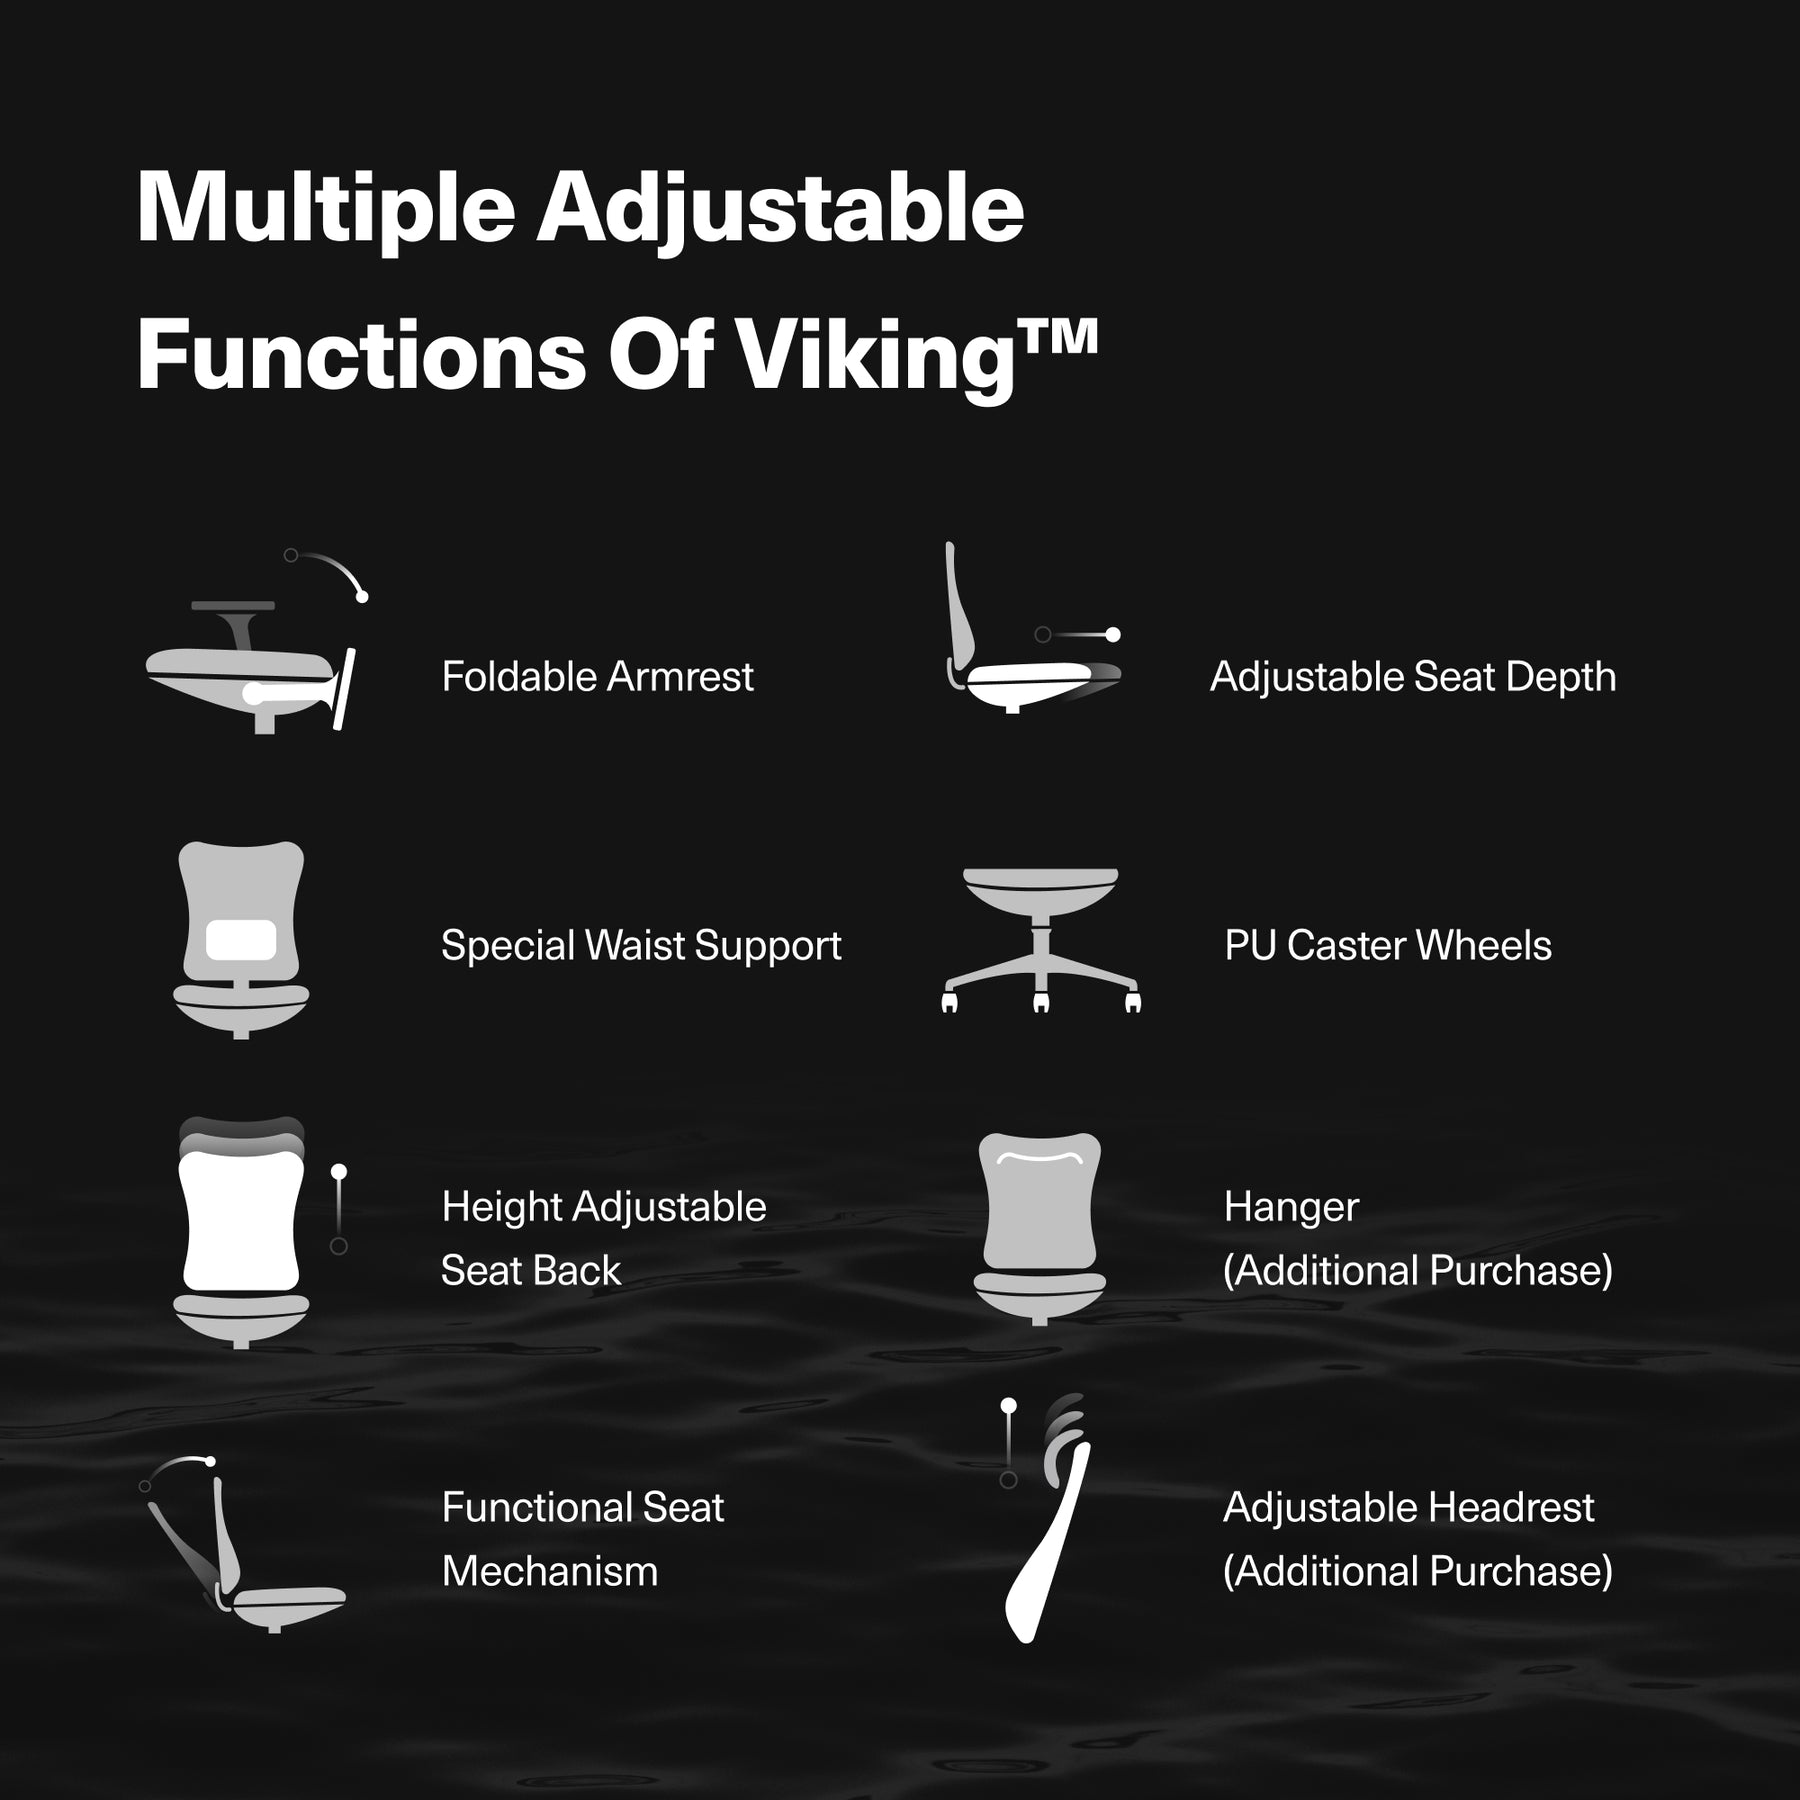 Viking™